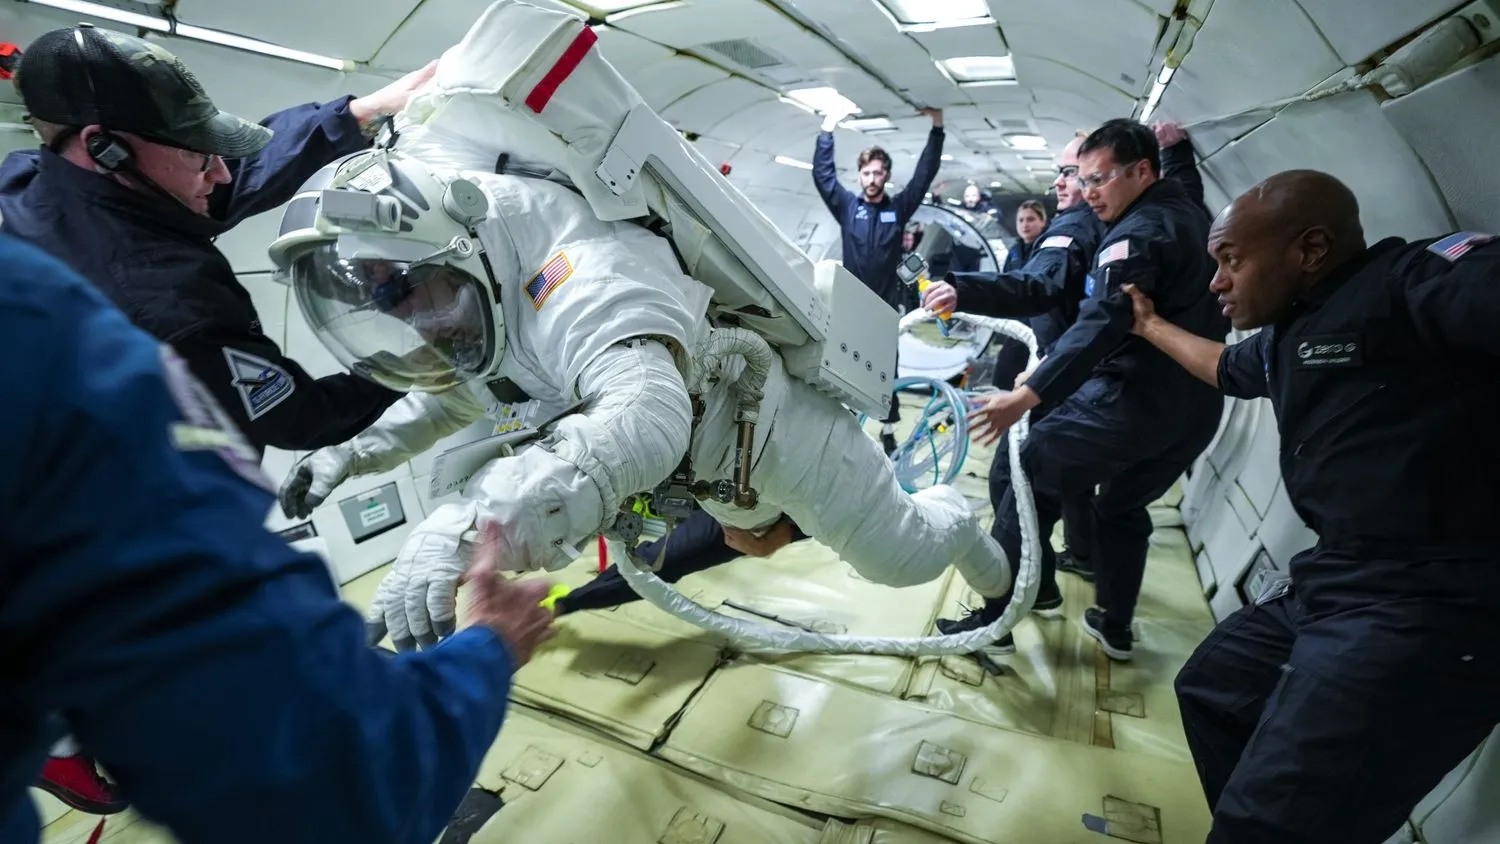 eine Person in einem klobigen Raumanzug schwebt schwerelos im Rumpf eines Flugzeugs, umgeben von Menschen in blauen Fluganzügen und Schutzbrillen